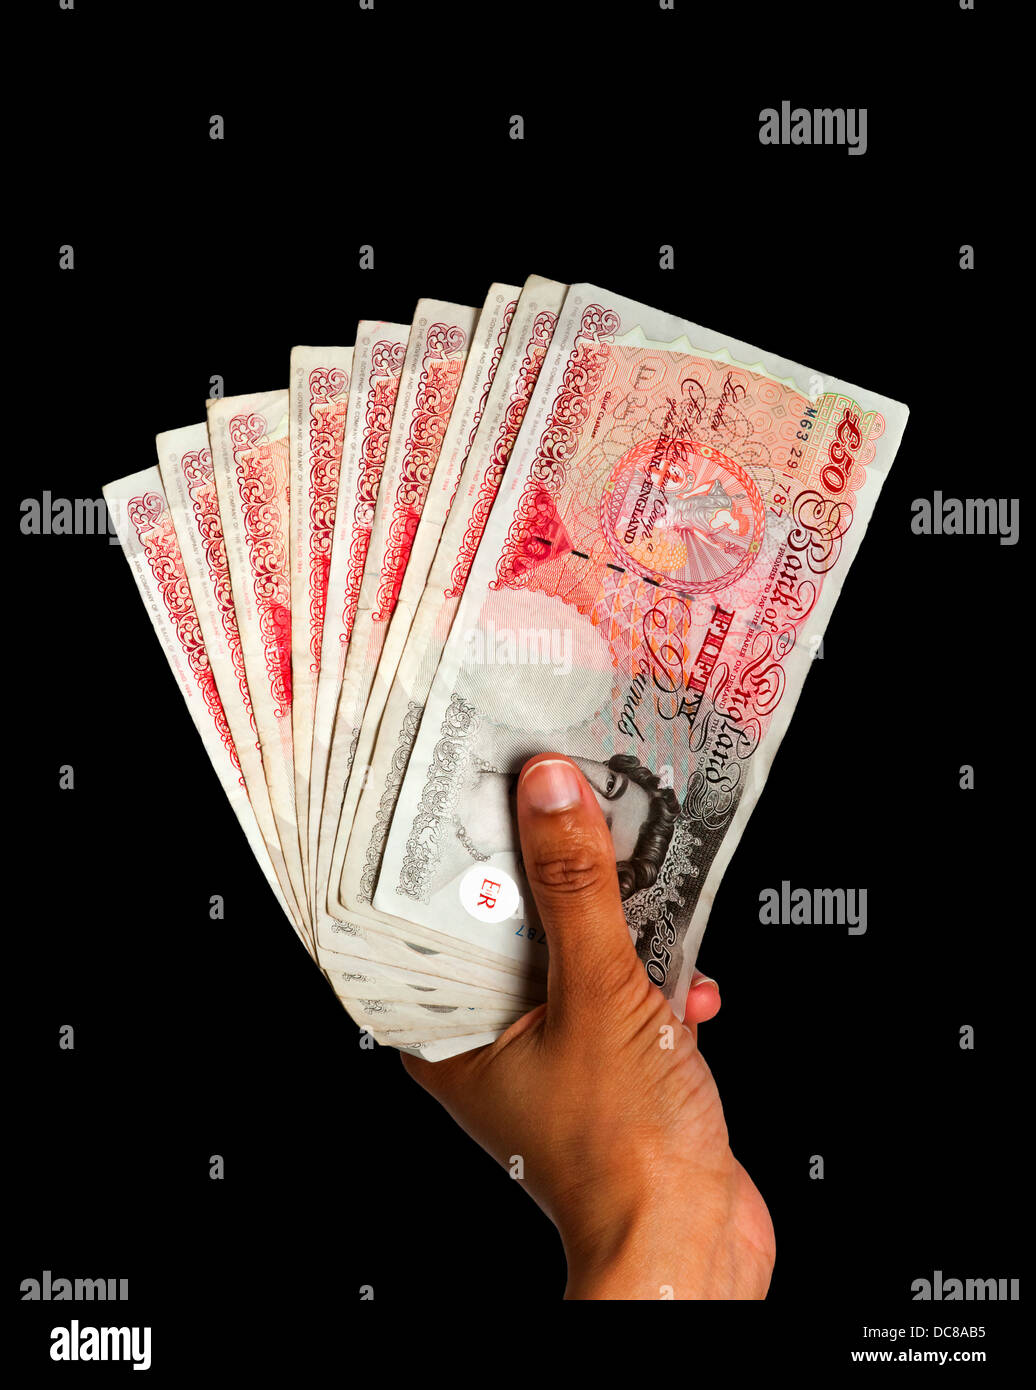 L'argent détenu dans la main - UK Currency with clipping path - Fond noir Banque D'Images